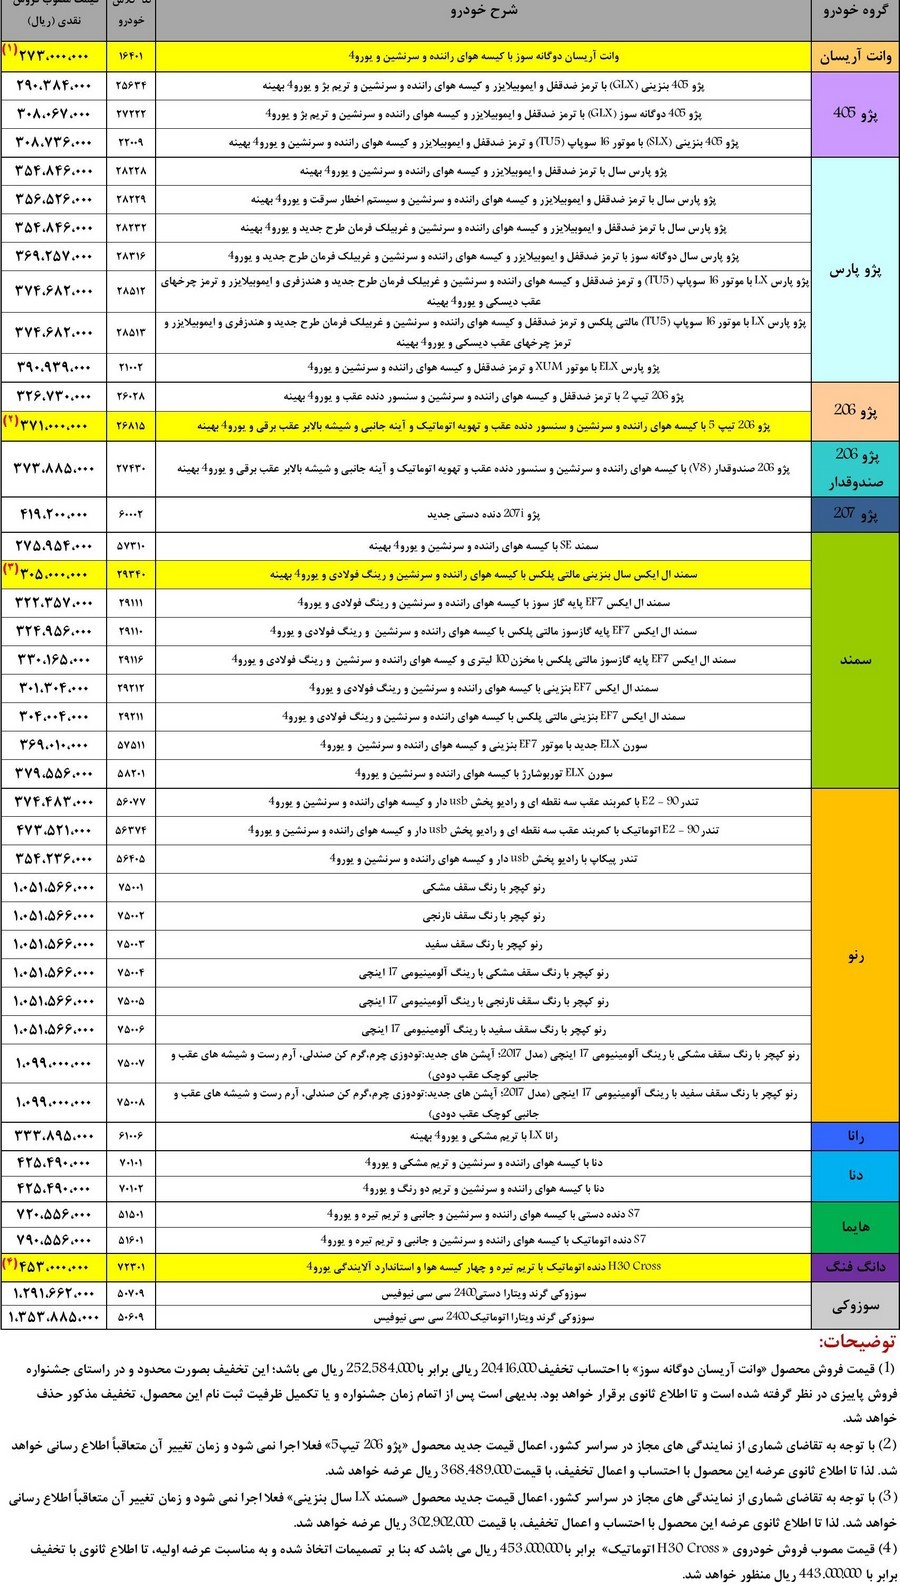  لیست قیمت جدید کارخانه‌ای ایران خودرو - نسخه 2 آذرماه 95

 